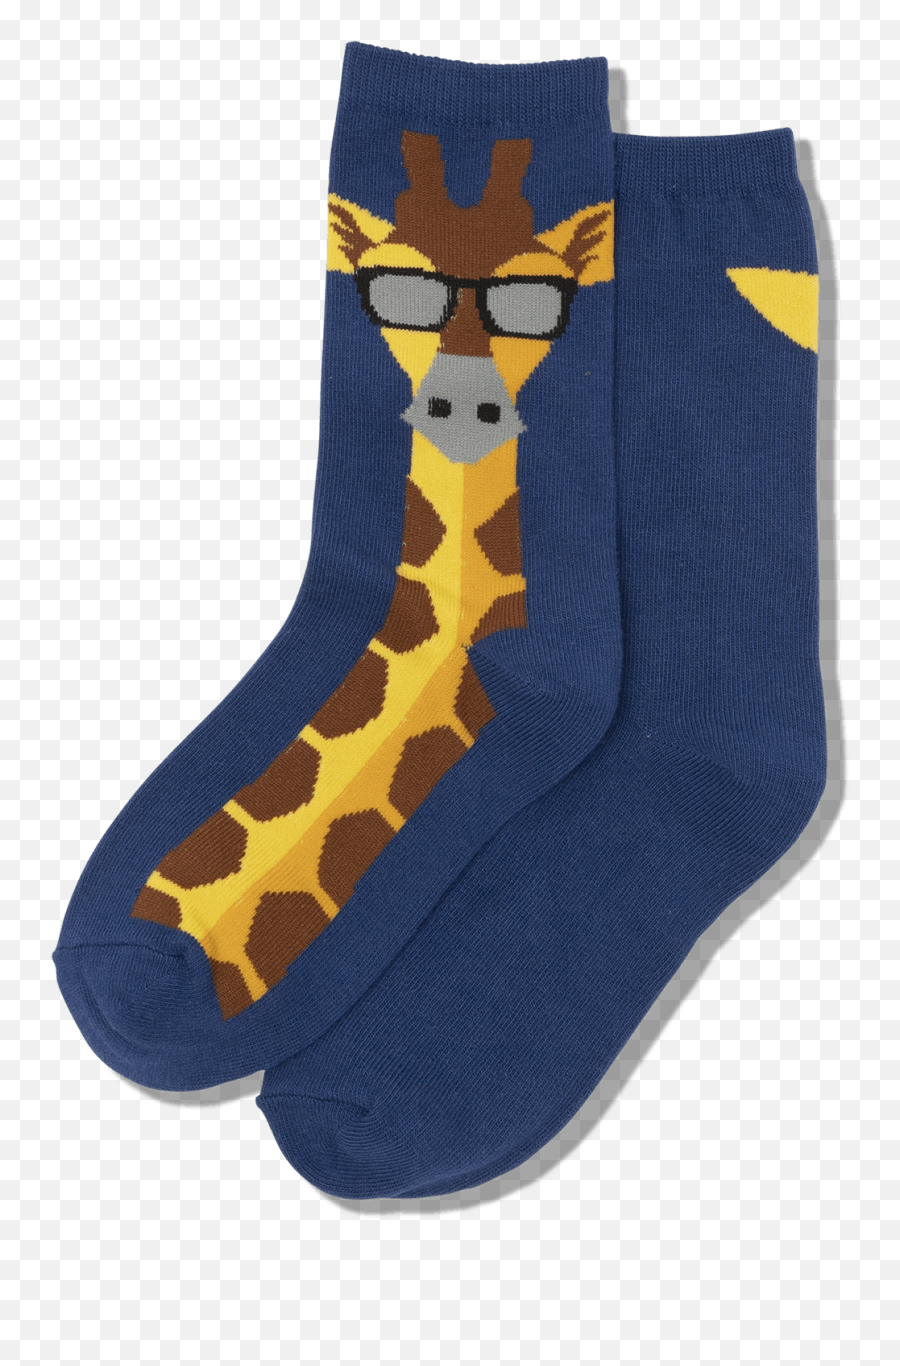 Crazy Socks - Sock Emoji,Socks With Emojis On Them For Kids